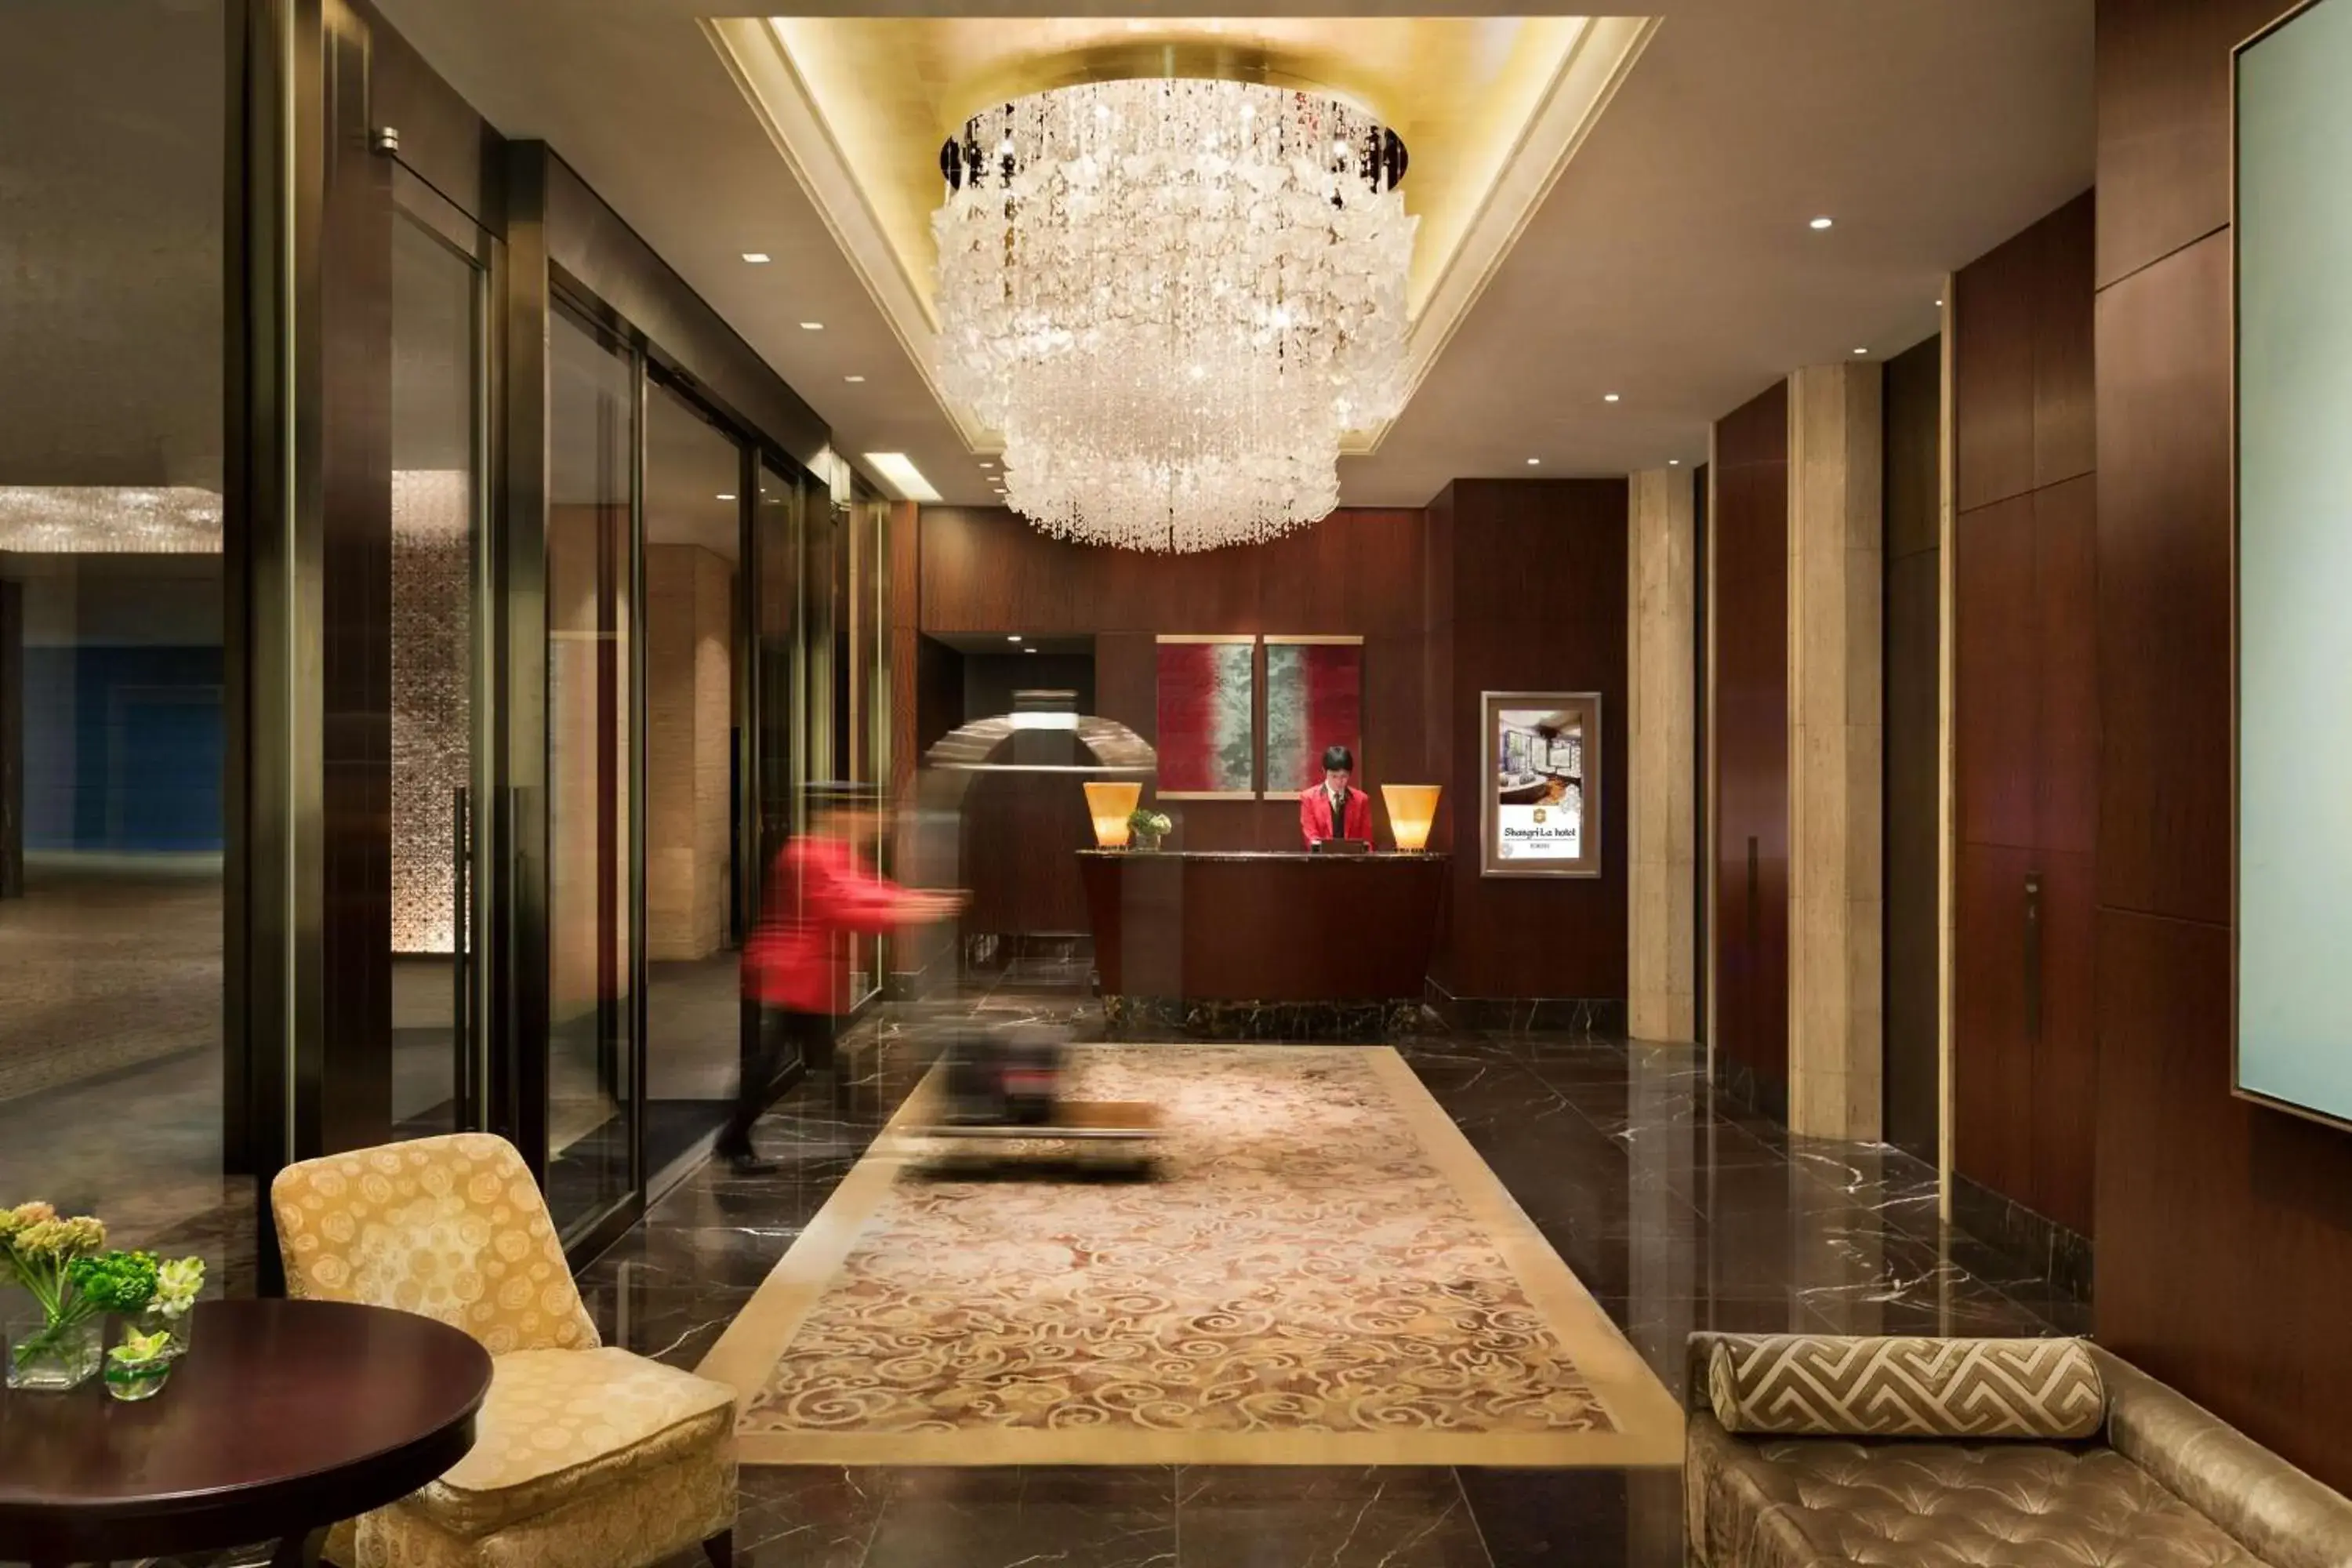 Lobby or reception in Shangri-La Tokyo